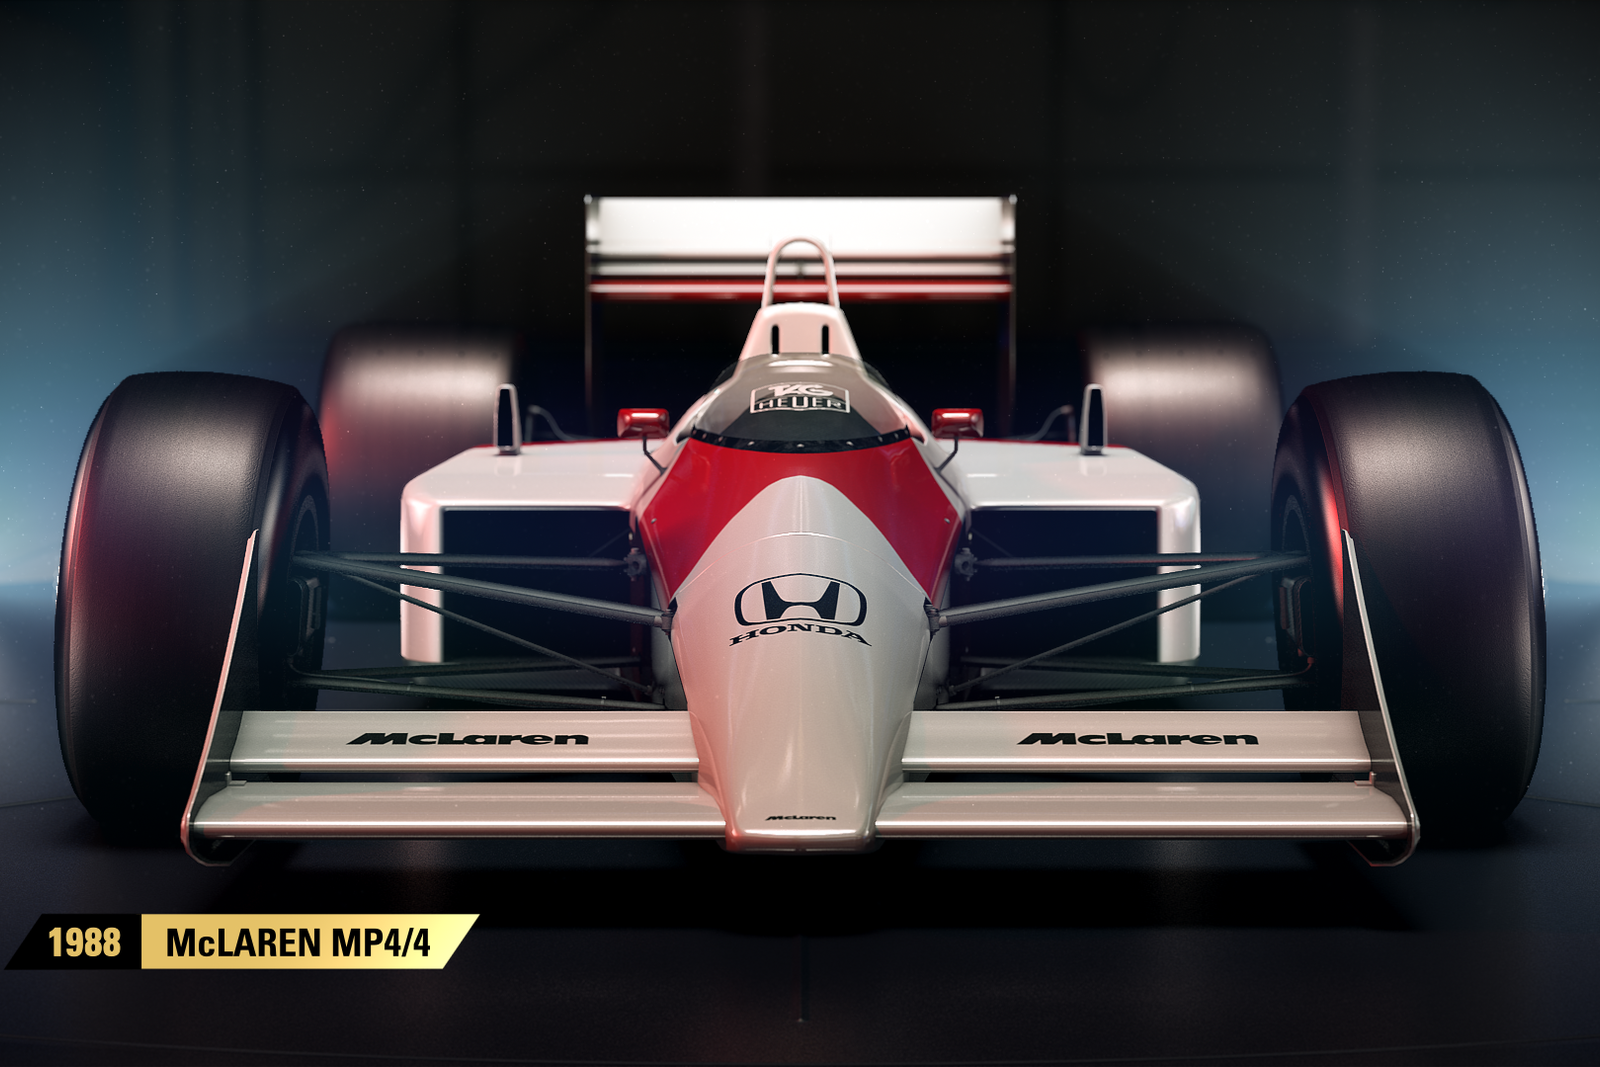 Hot Stuff, f1 2017 codemasters classic honda: Game F1 2017 Hadirkan Mobil F1 Klasik, Layak Ditunggu!